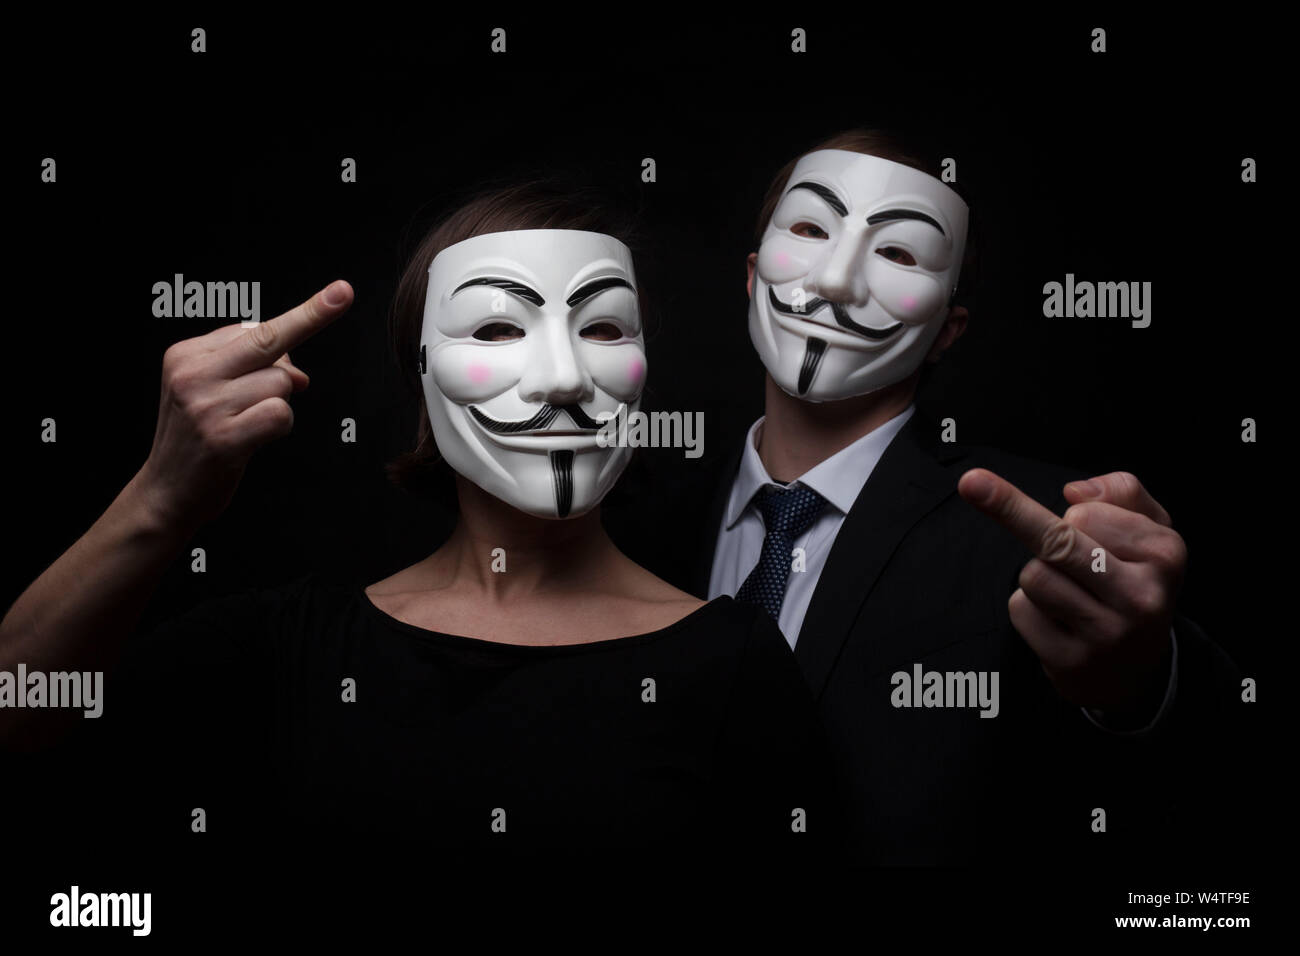 PRAGUE - 6 mars : deux membres du groupe de hackers activistes anonymes  avec masque studio shot Photo Stock - Alamy